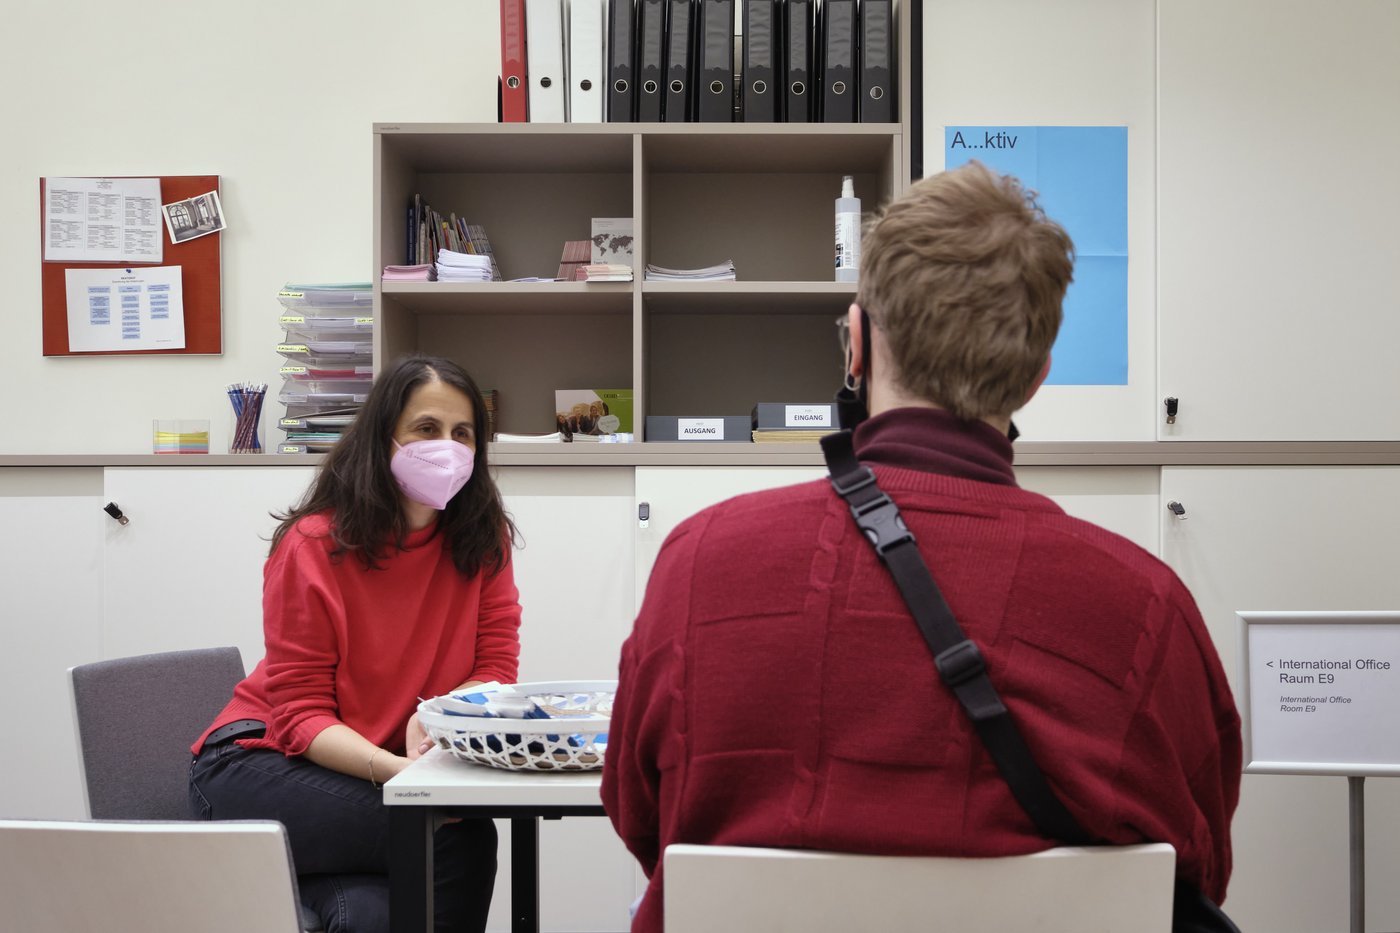 Eine Frau und ein Student sitzen an einem Tisch, beide haben rote Pullover und Masken an. Im Hintergrund sieht man typische Büroeinrichtung.